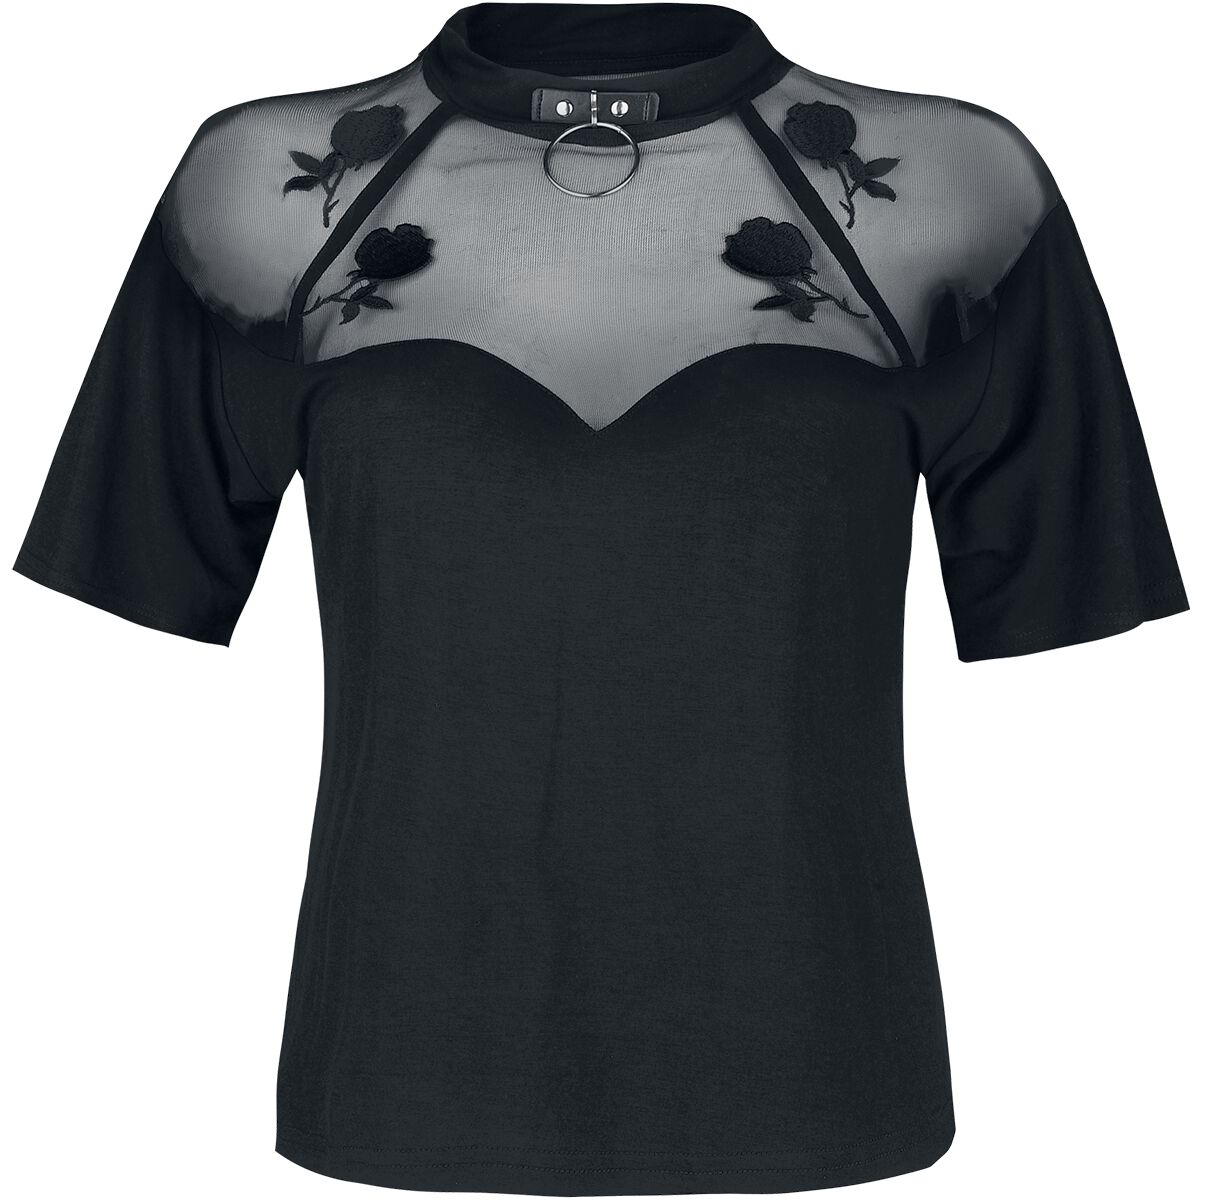 Jawbreaker T-Shirt - Rose Garden Mesh Top - S bis XXL - für Damen - Größe XXL - schwarz